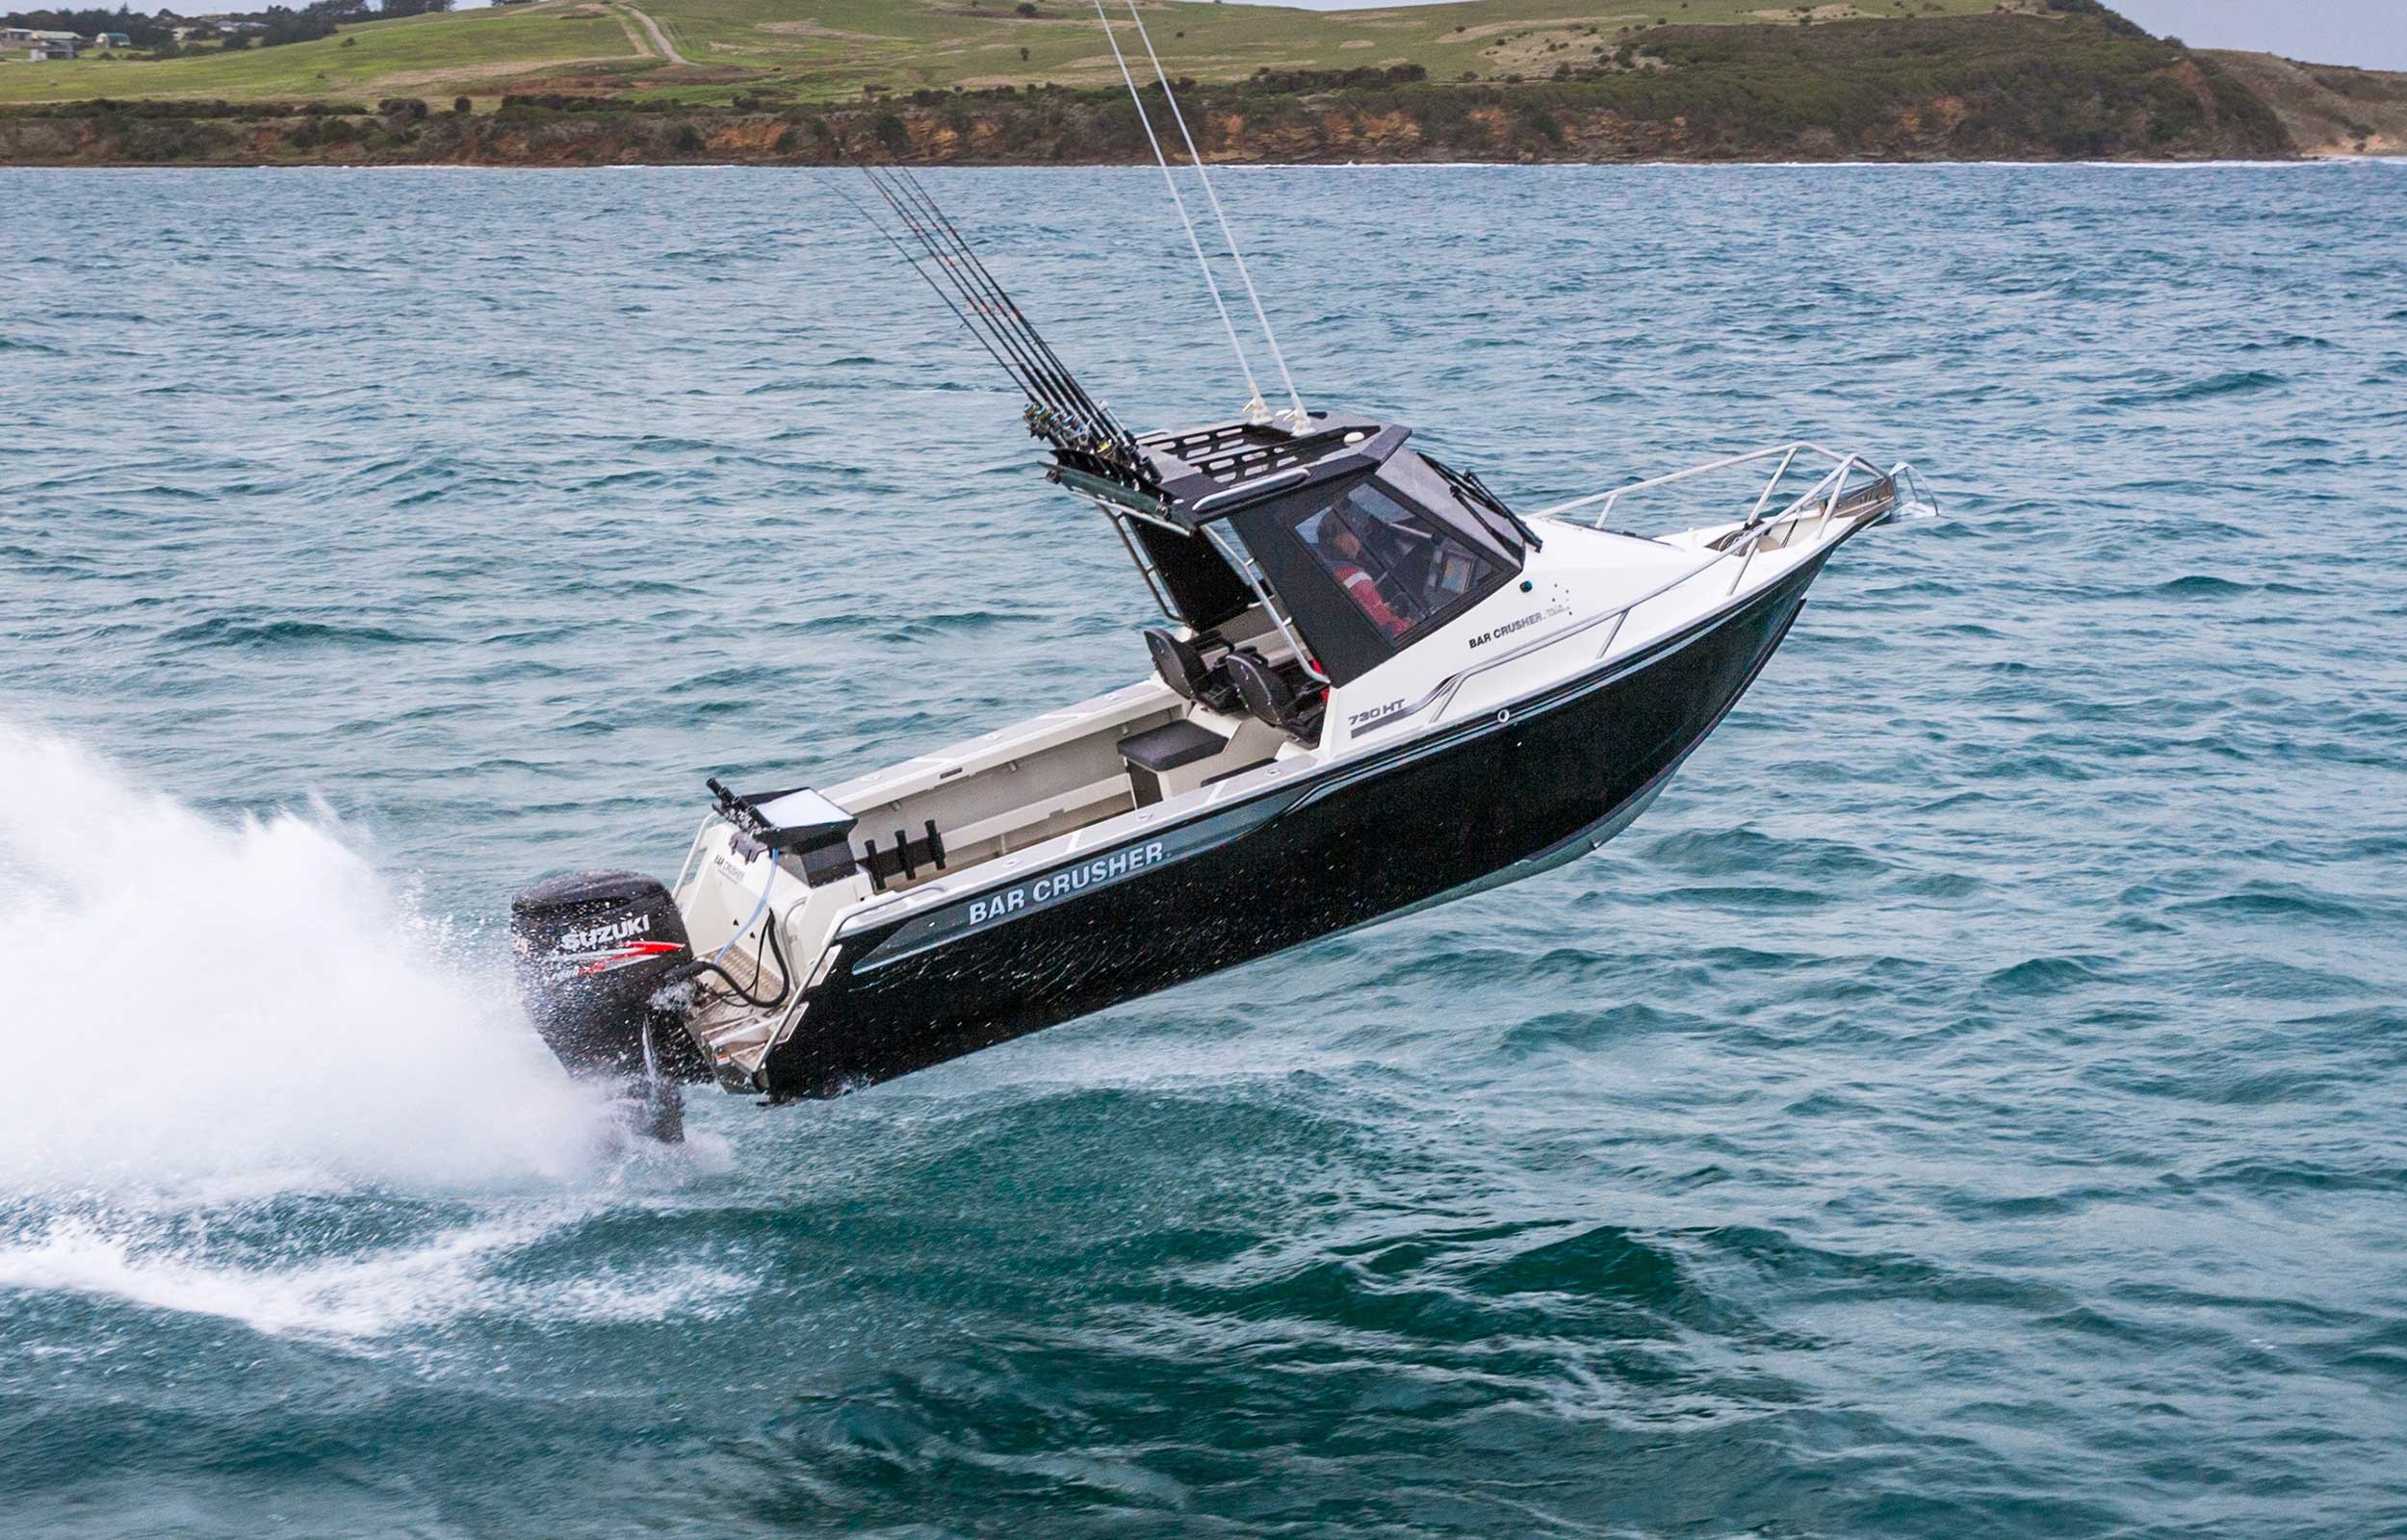 models-bar-crusher-730ht-plate-aluminium-fishing-boat-web-2